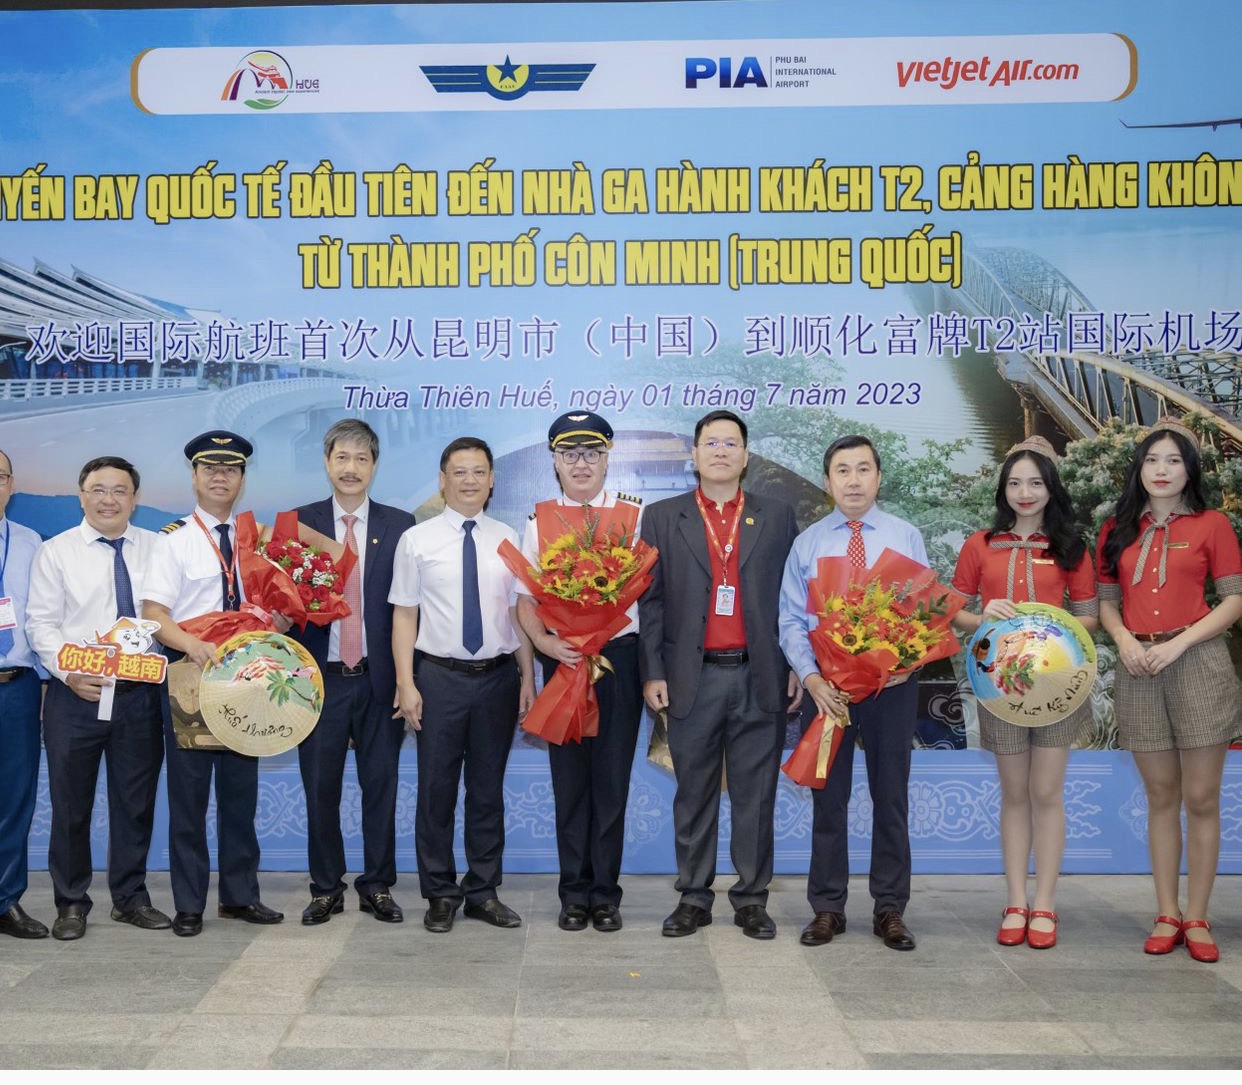 Lễ đón chuyến bay quốc tế đầu tiên đến Nhà ga T2 - Cảng Hàng không quốc tế Phú Bài